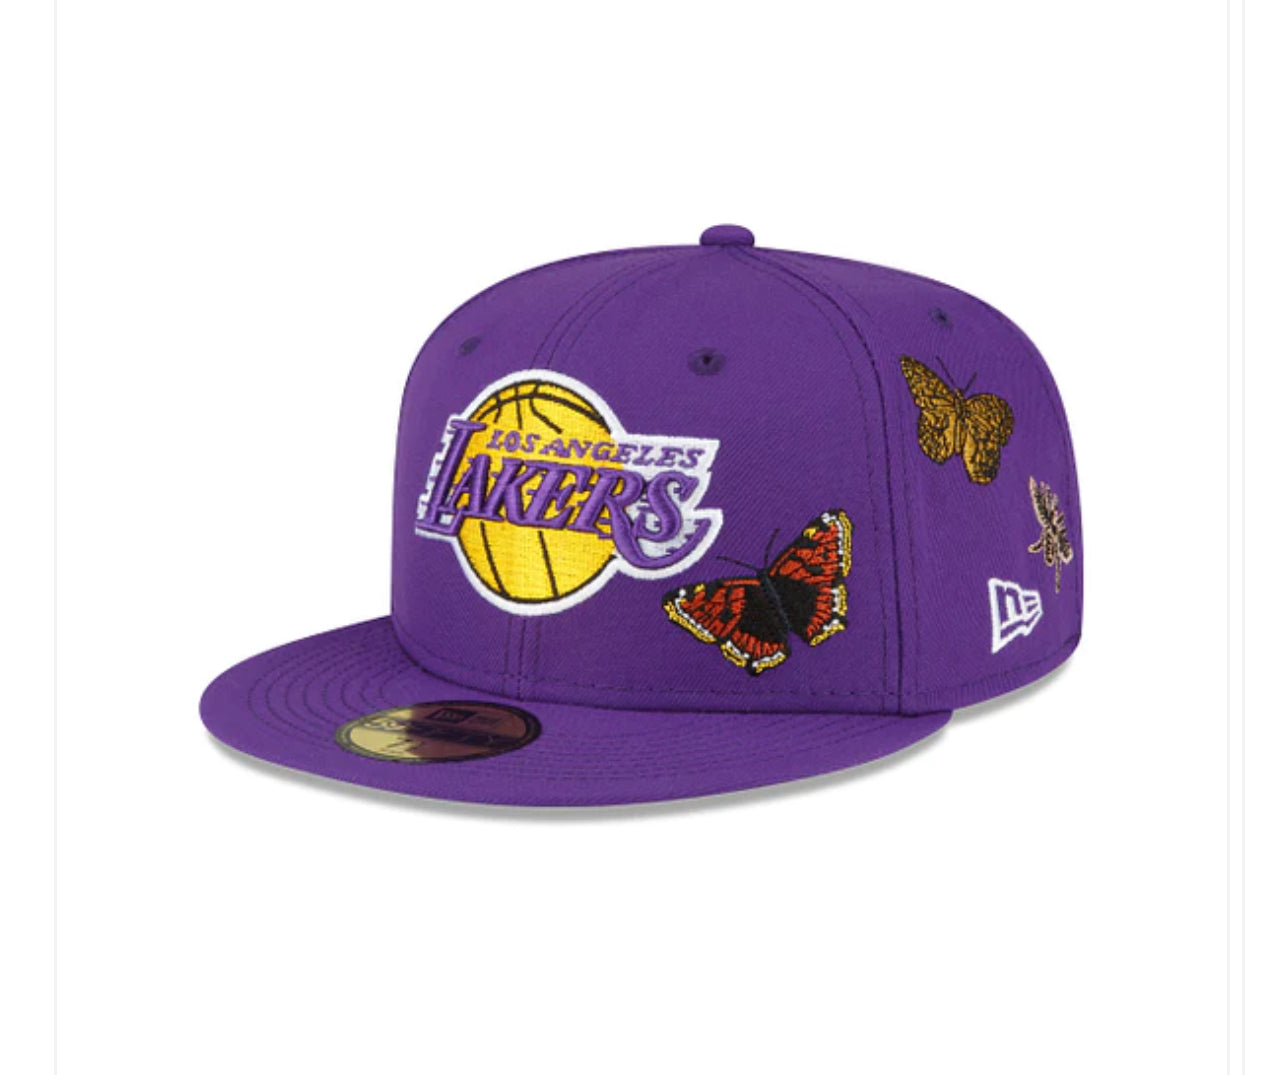 New Era x Felt "Lakers"